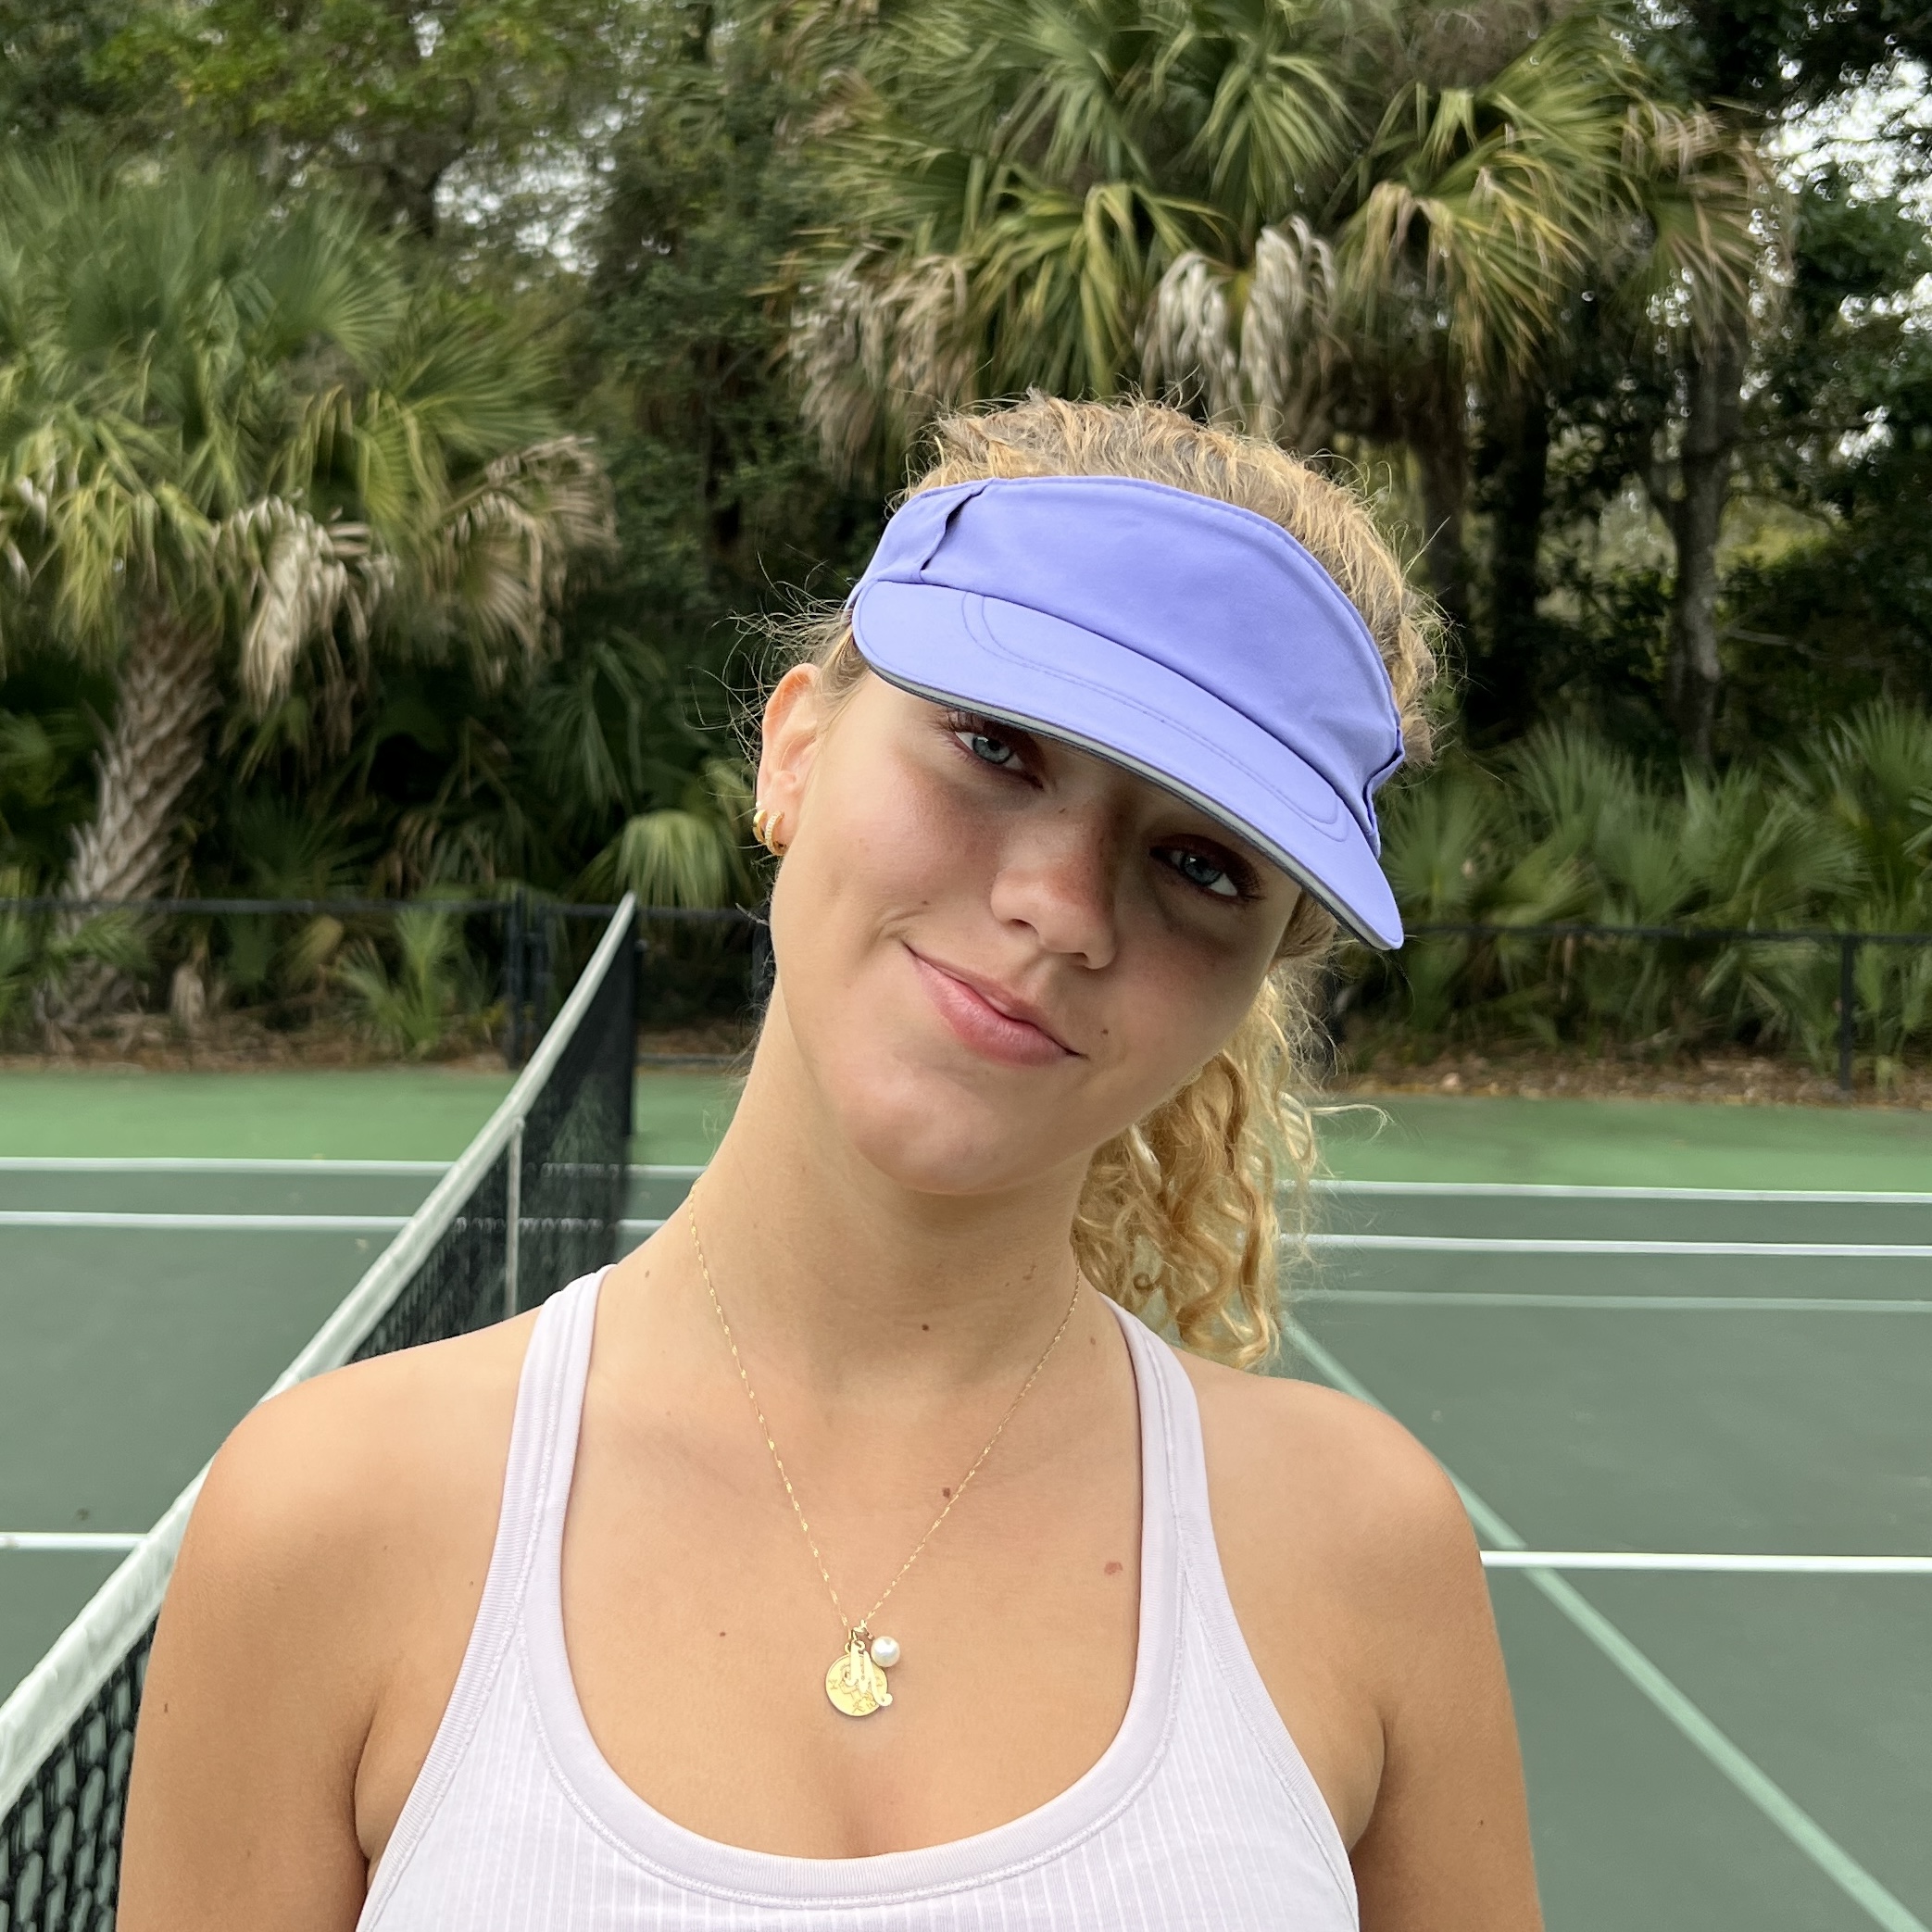 Women's tennis visor in lavender